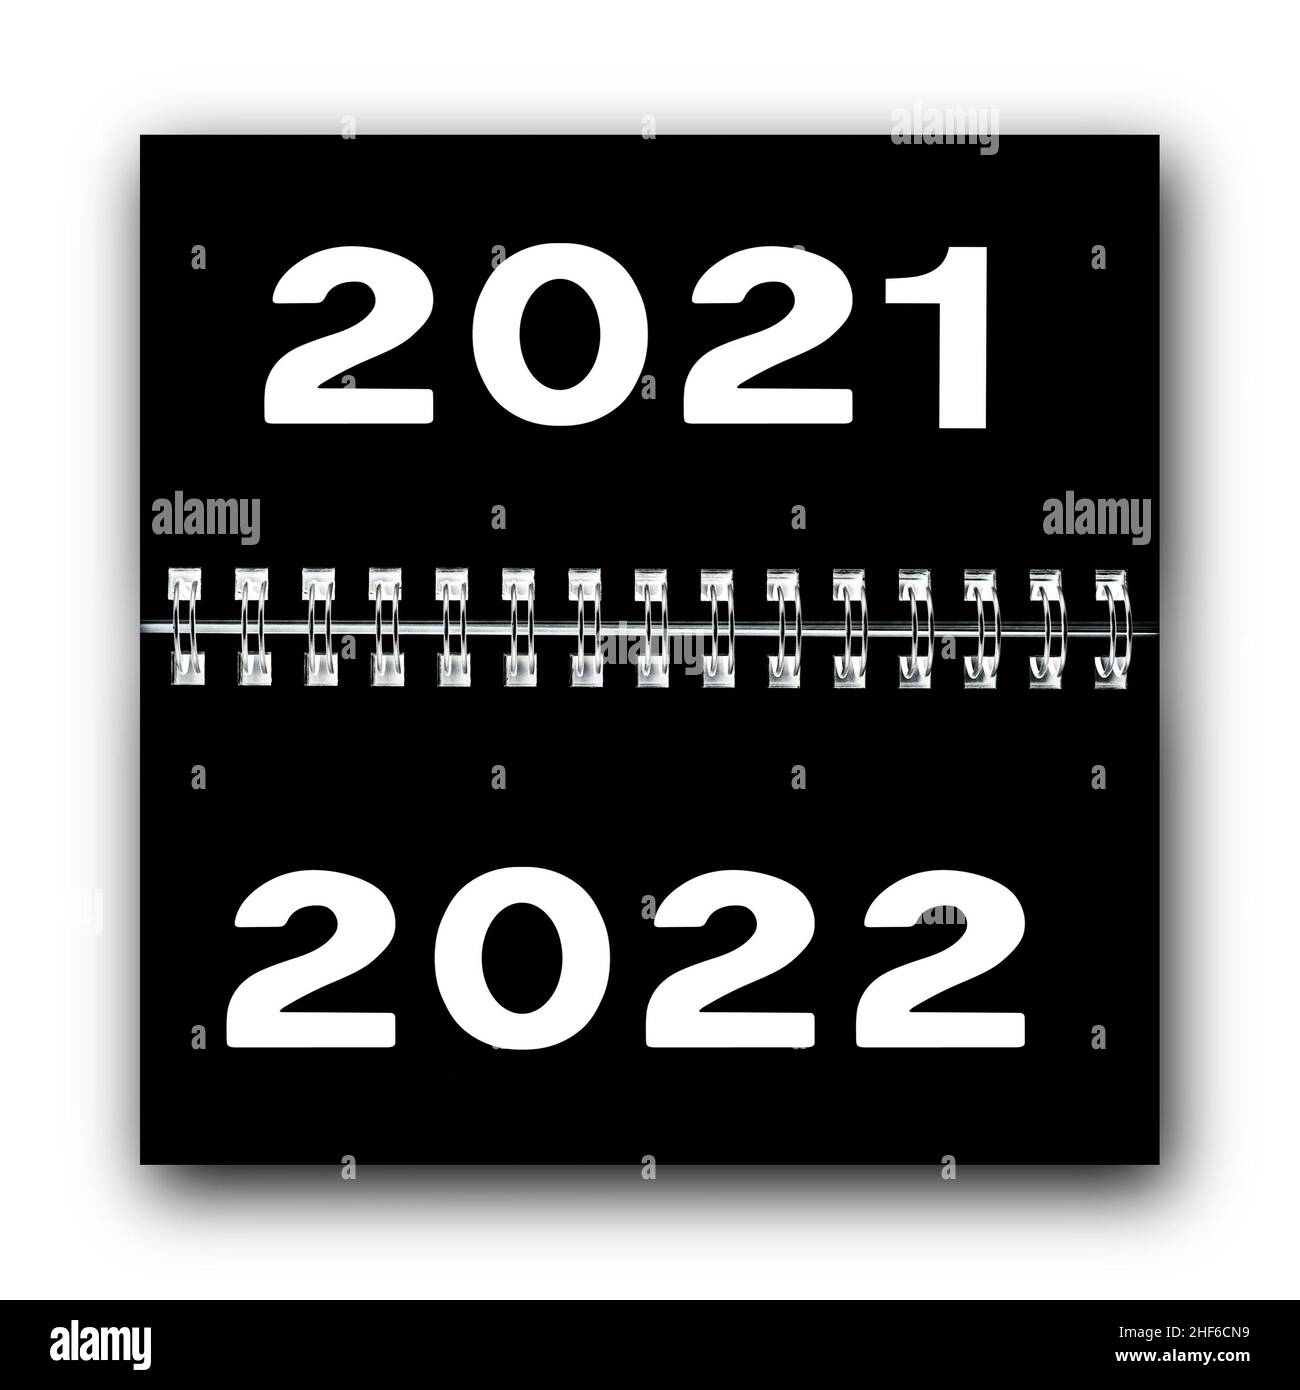 Calendario con el cambio de año de 2021 a 2022 Foto de stock